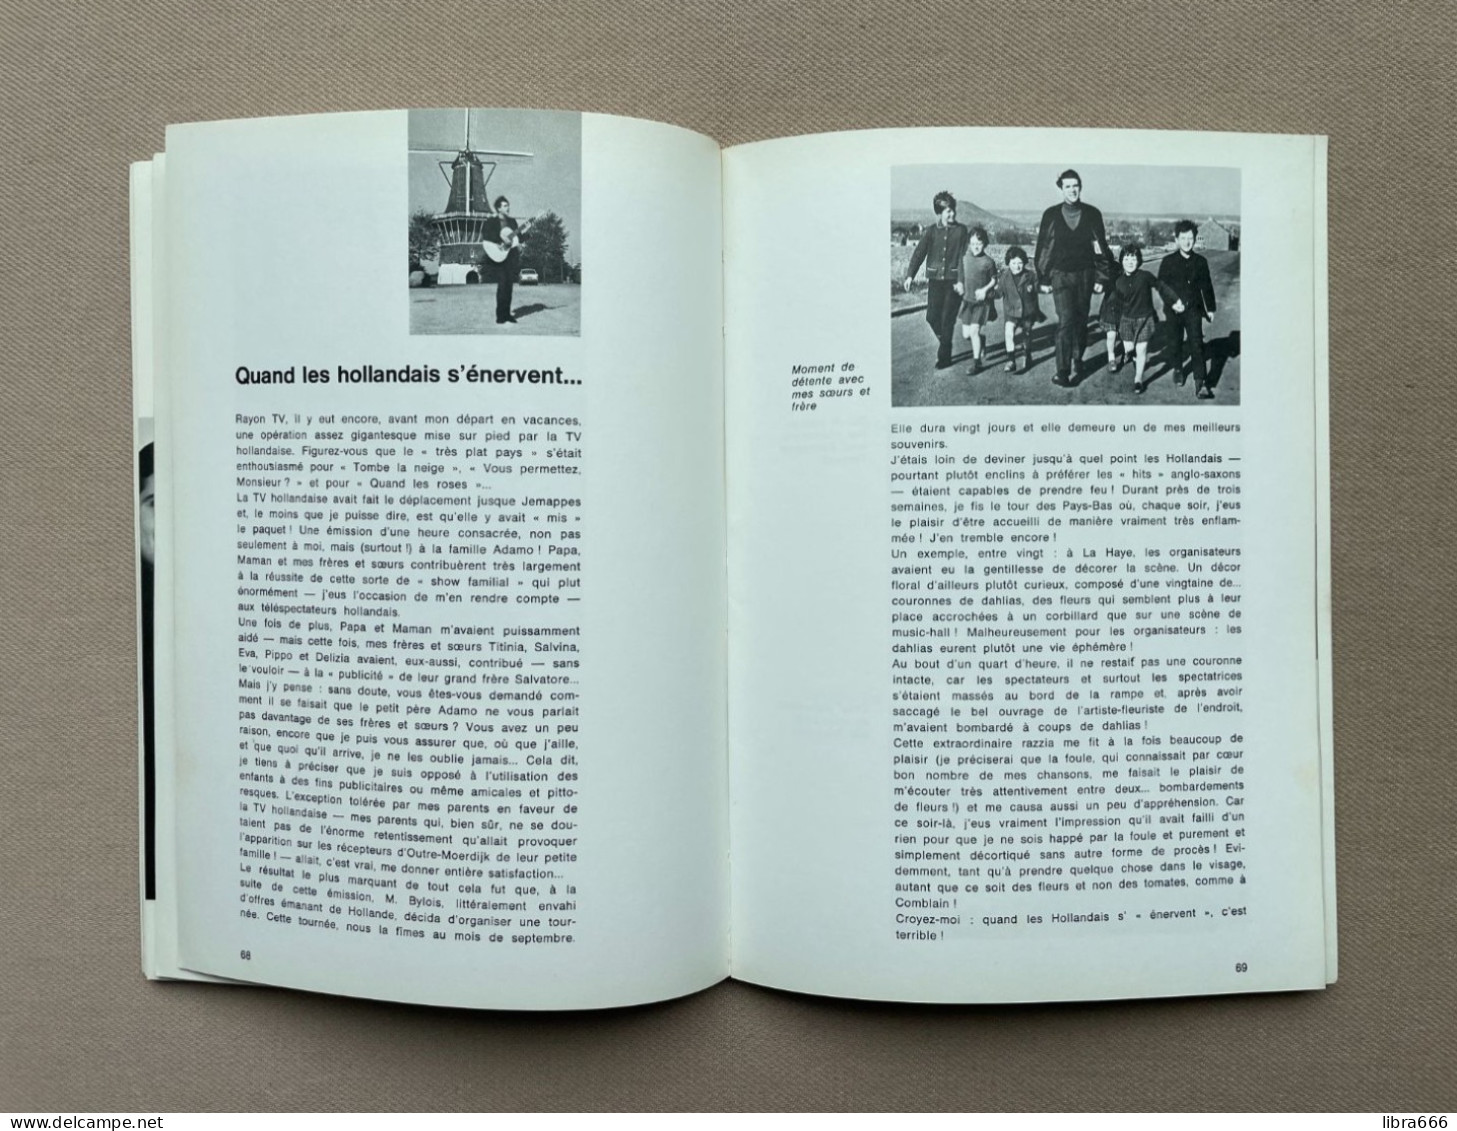 SALVATORE - PAR ADAMO / Recueilli par Henry Lemaire / J. Verbeeck, éditeur - Bruxelles / (88pp. - 21 x 15 cm.)